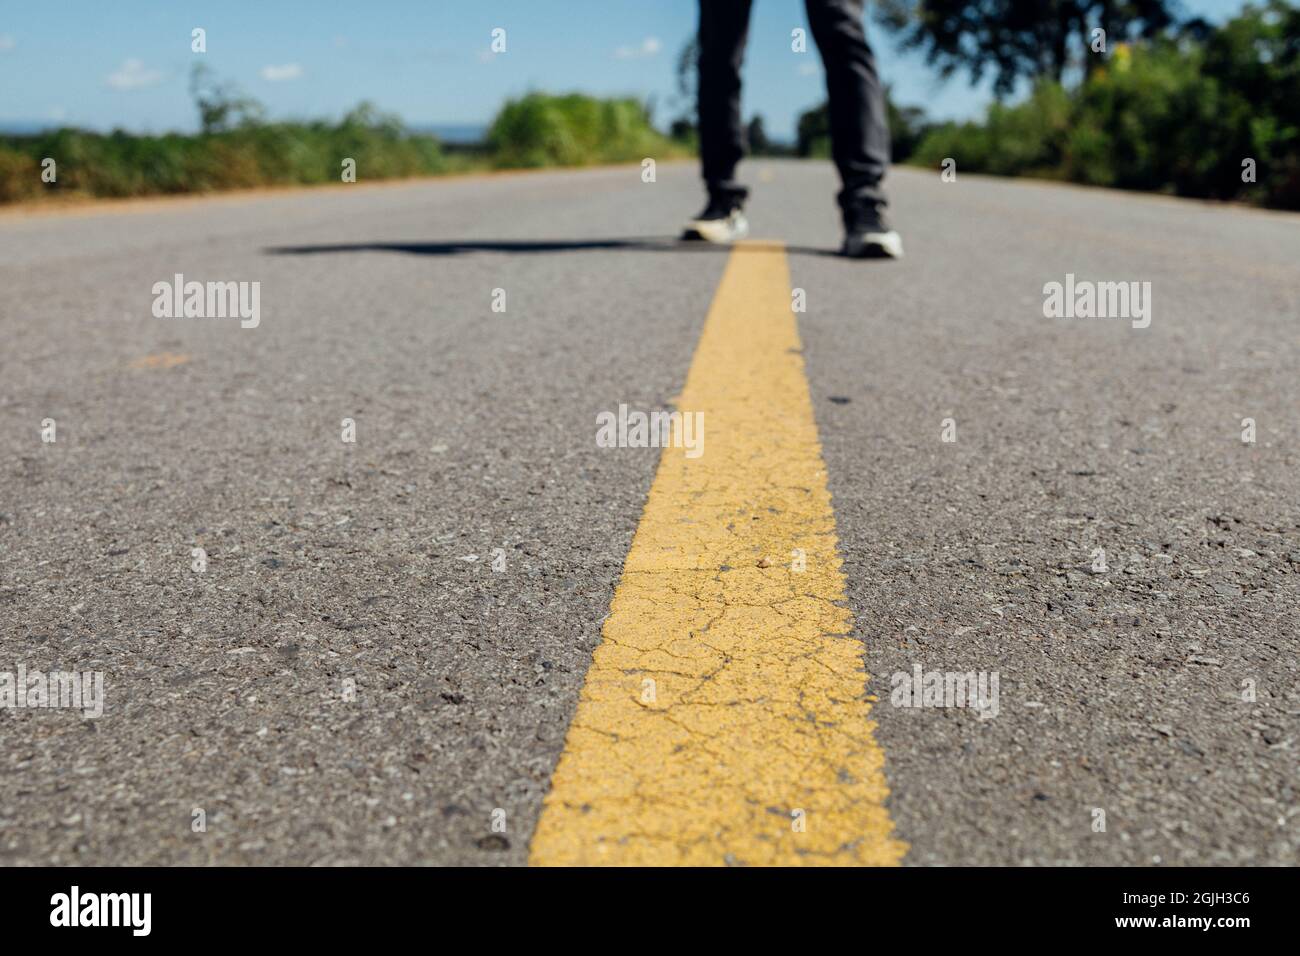 Piedi da uomo in piedi su strada asfaltata con linee di marcatura gialle. Uomo che indossa scarpe da ginnastica e jeans. Foto Stock